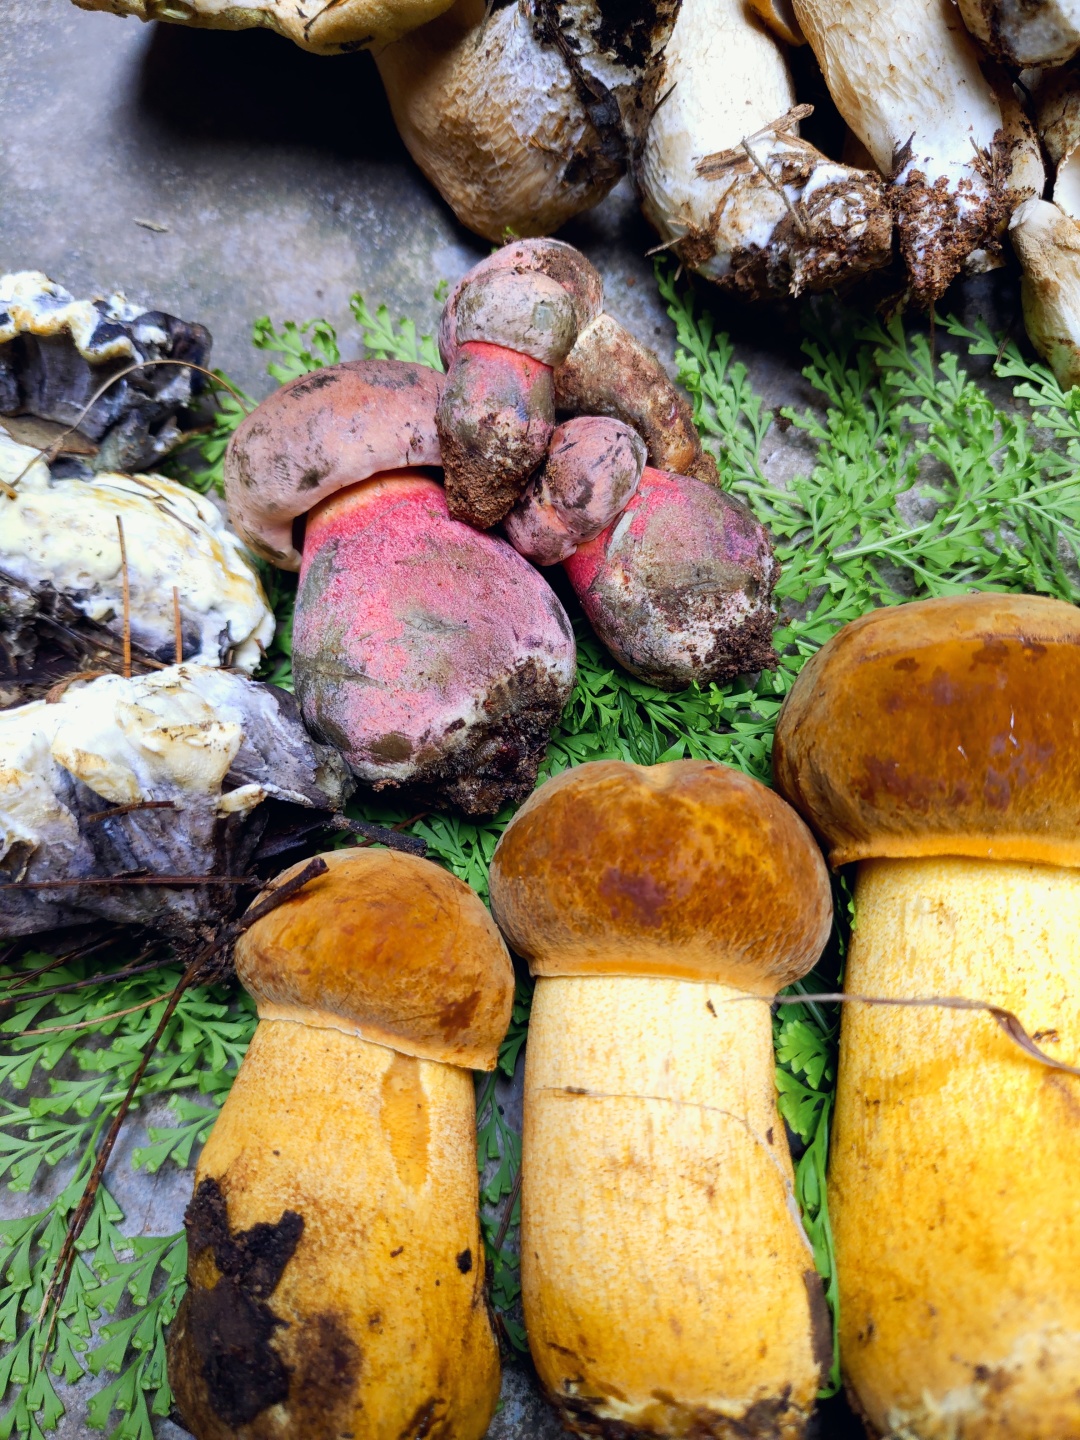 菌菇正当时,这4种最贵的云南菌,价值堪比黄金,吃完一起见小人